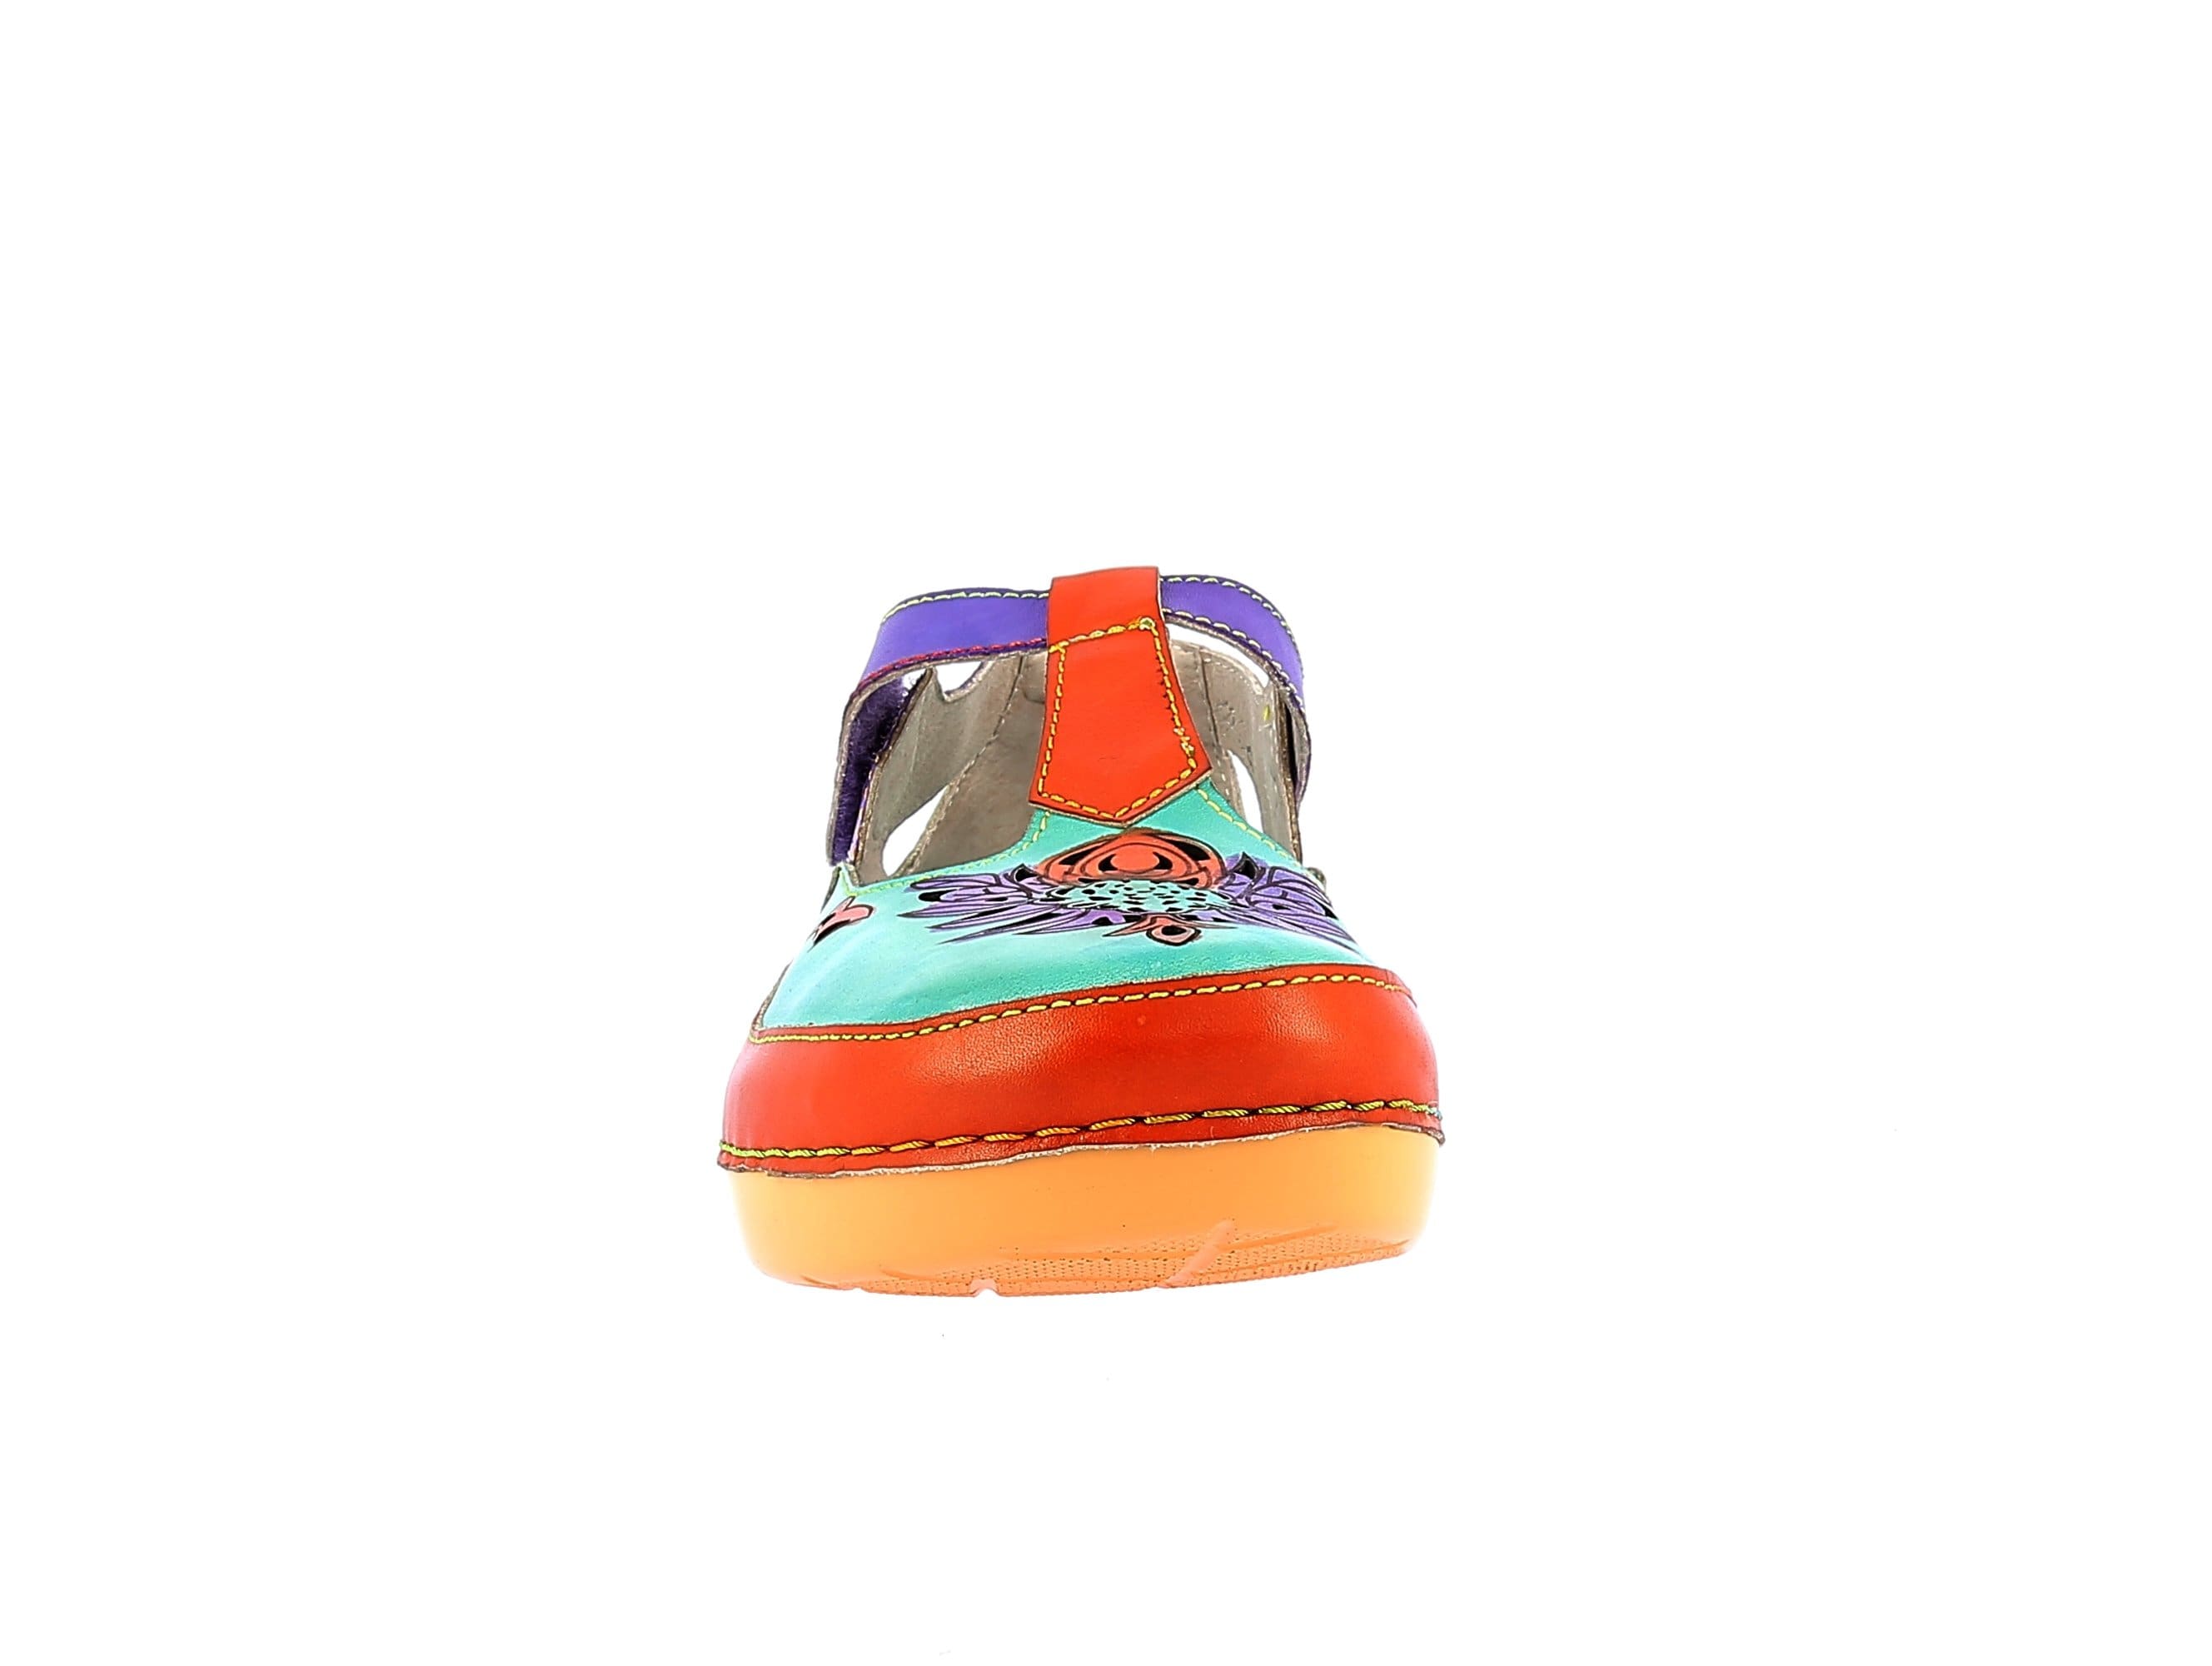 BICLLYO 24 Shoes - Sandal